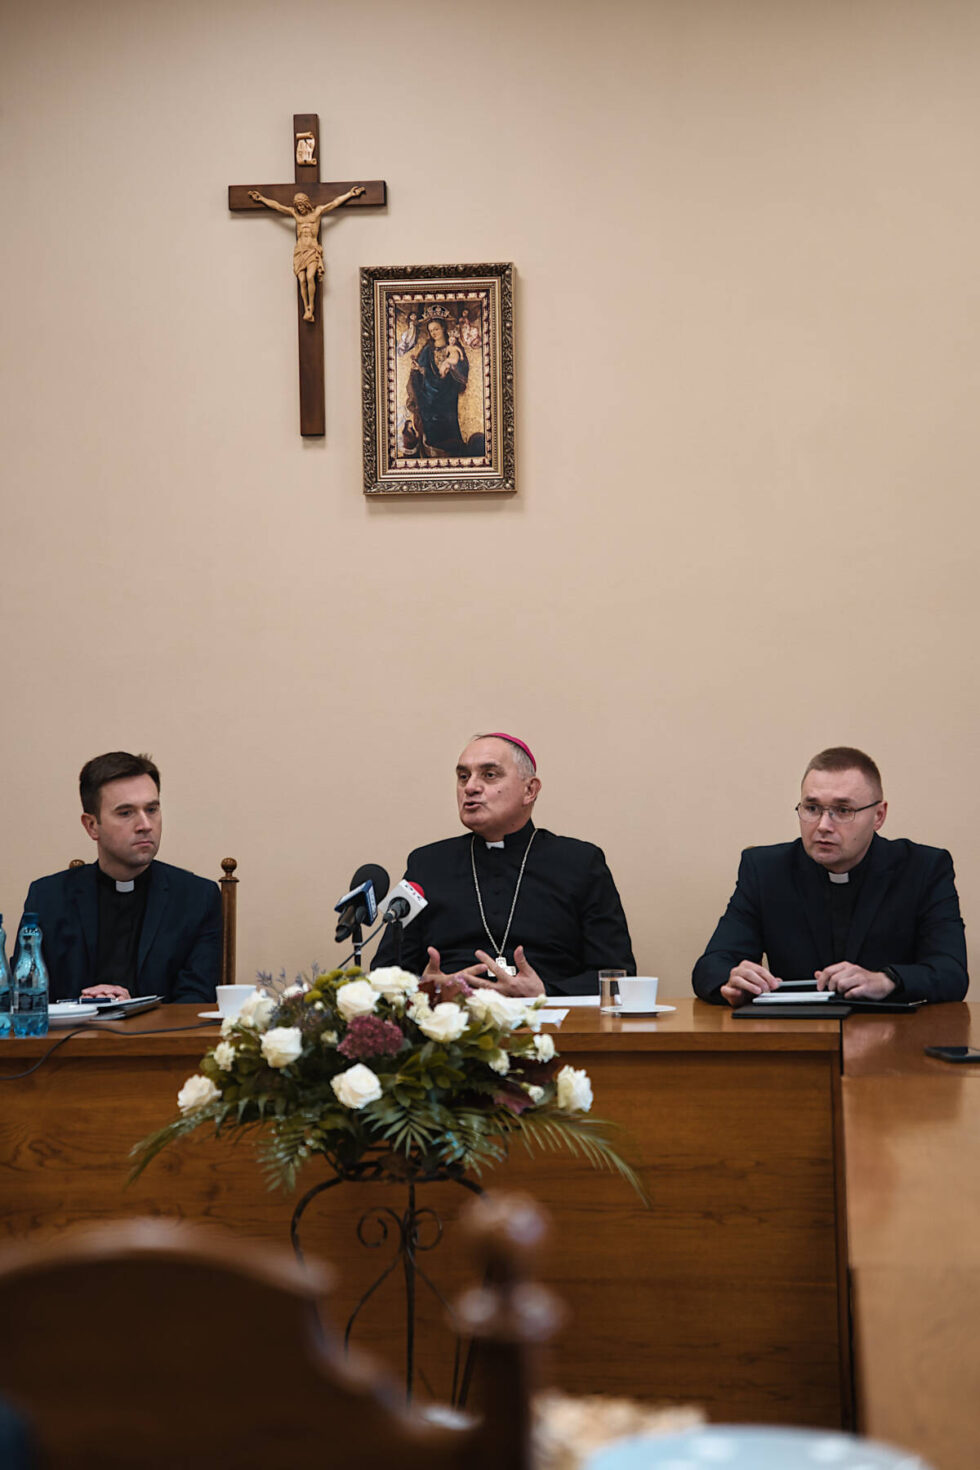 Biskup Krzysztof Włodarczyk o mniejszej liczbie ludzi w bydgoskich kościołach i religii w szkołach